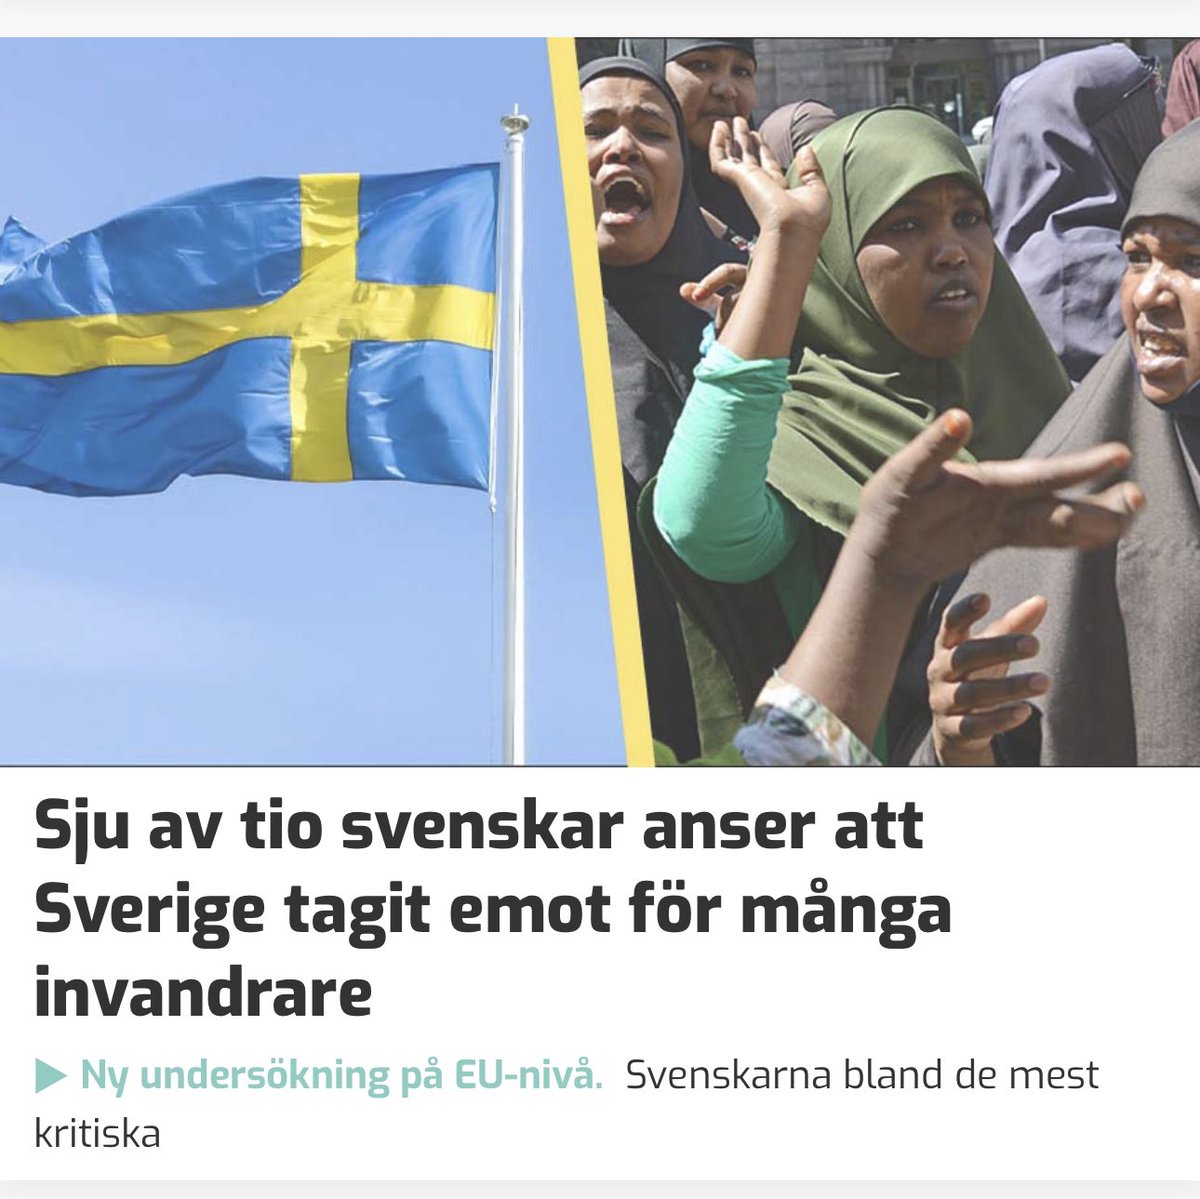 Låt mig förstå det rätt, idag kallas det alltså 'desinformation' att konstatera att massinvandring från dysfunktionella länder förändrat Sverige till oigenkänlighet och förstört landet bortom räddning? 
Eller kan någon förklara exakt vad det är som SD 'ljuger' om? #svpol #migpol